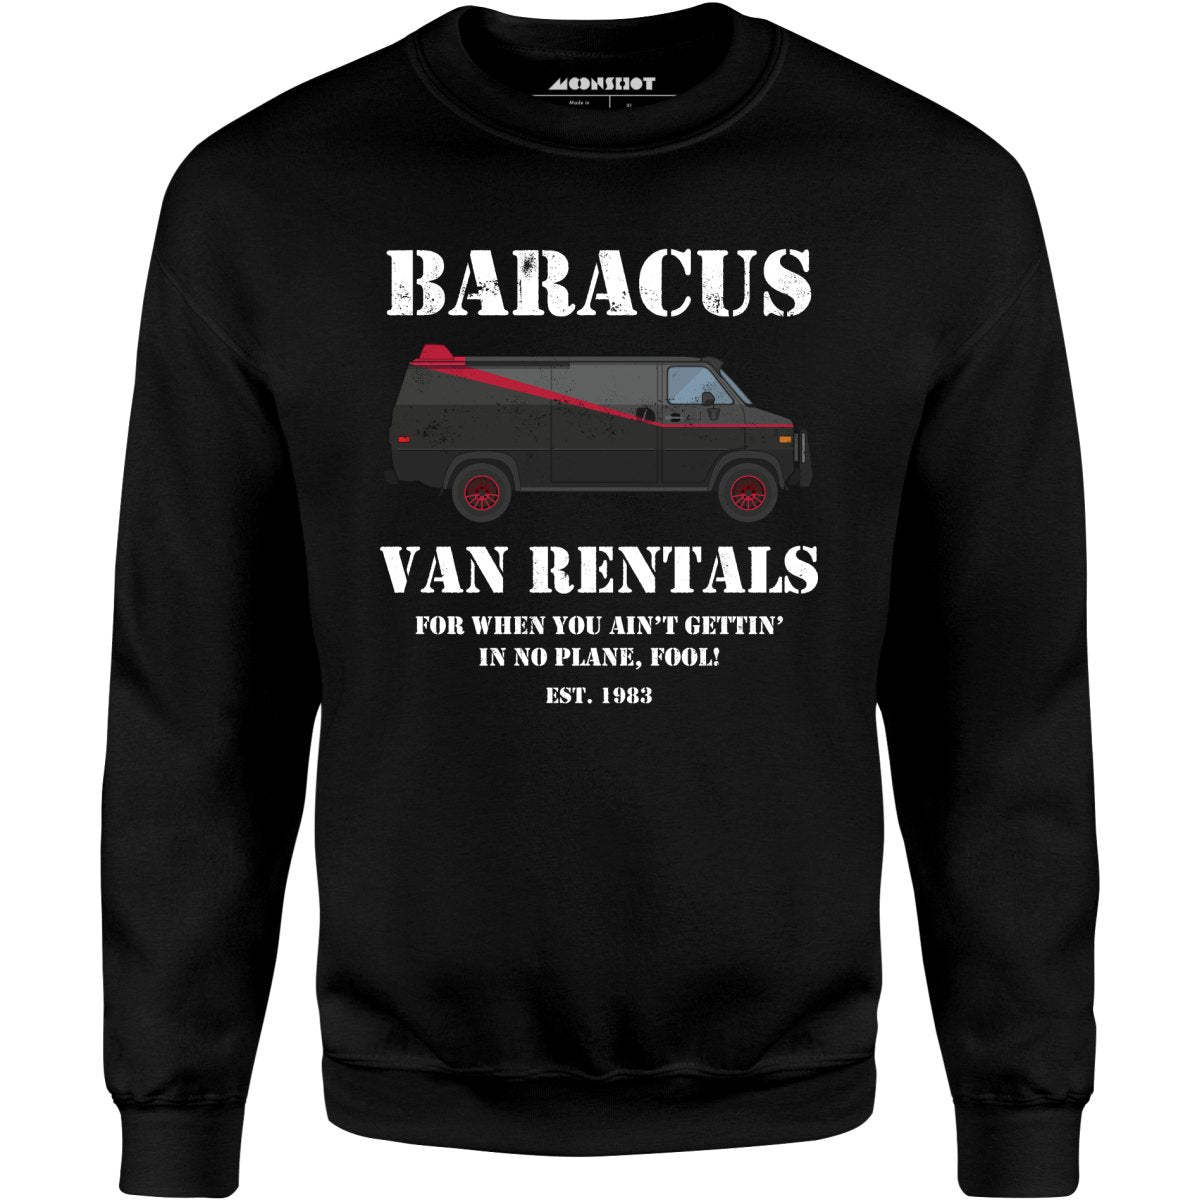 Baracus Van Rentals - Unisex Sweatshirt